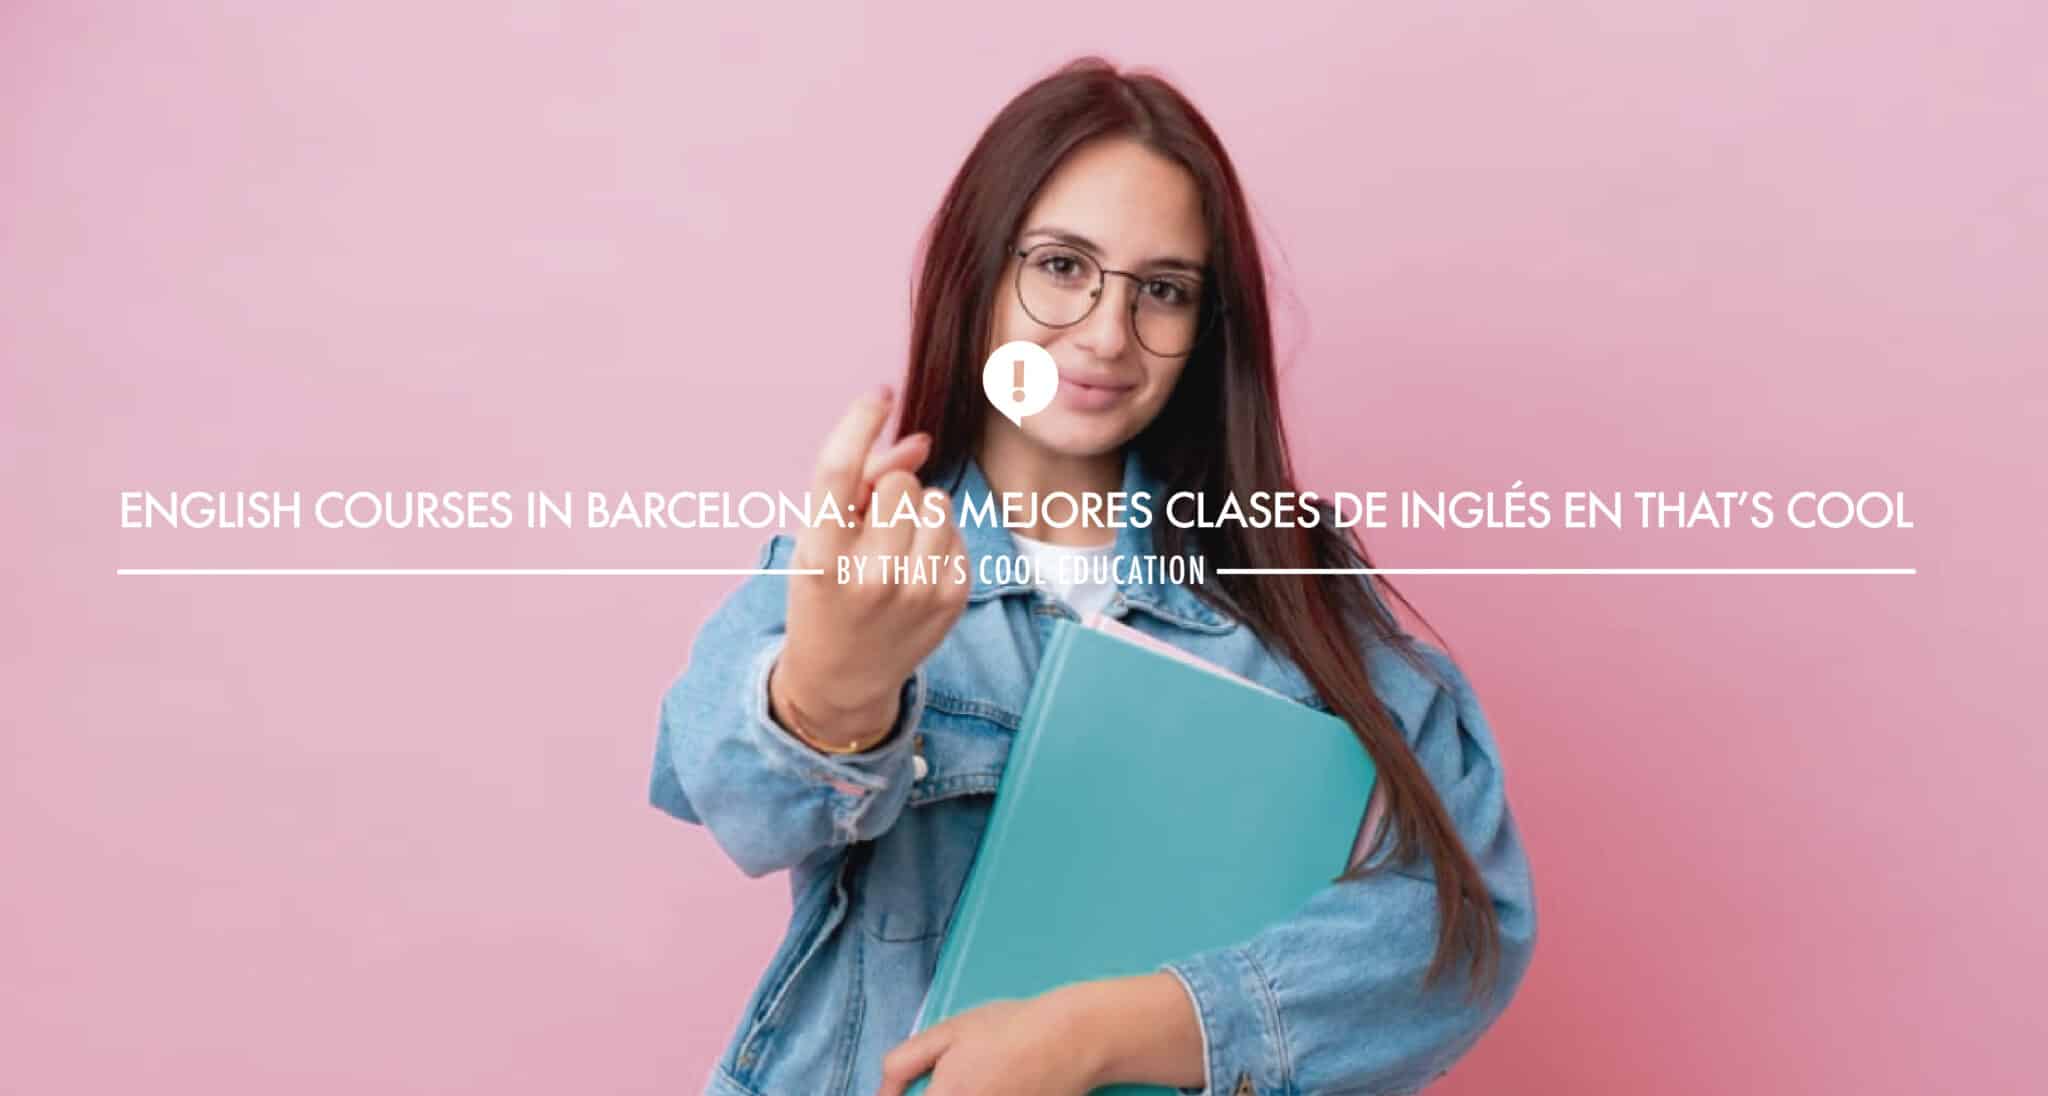 English courses in Barcelona: Las mejores clases de inglés en That’s Cool